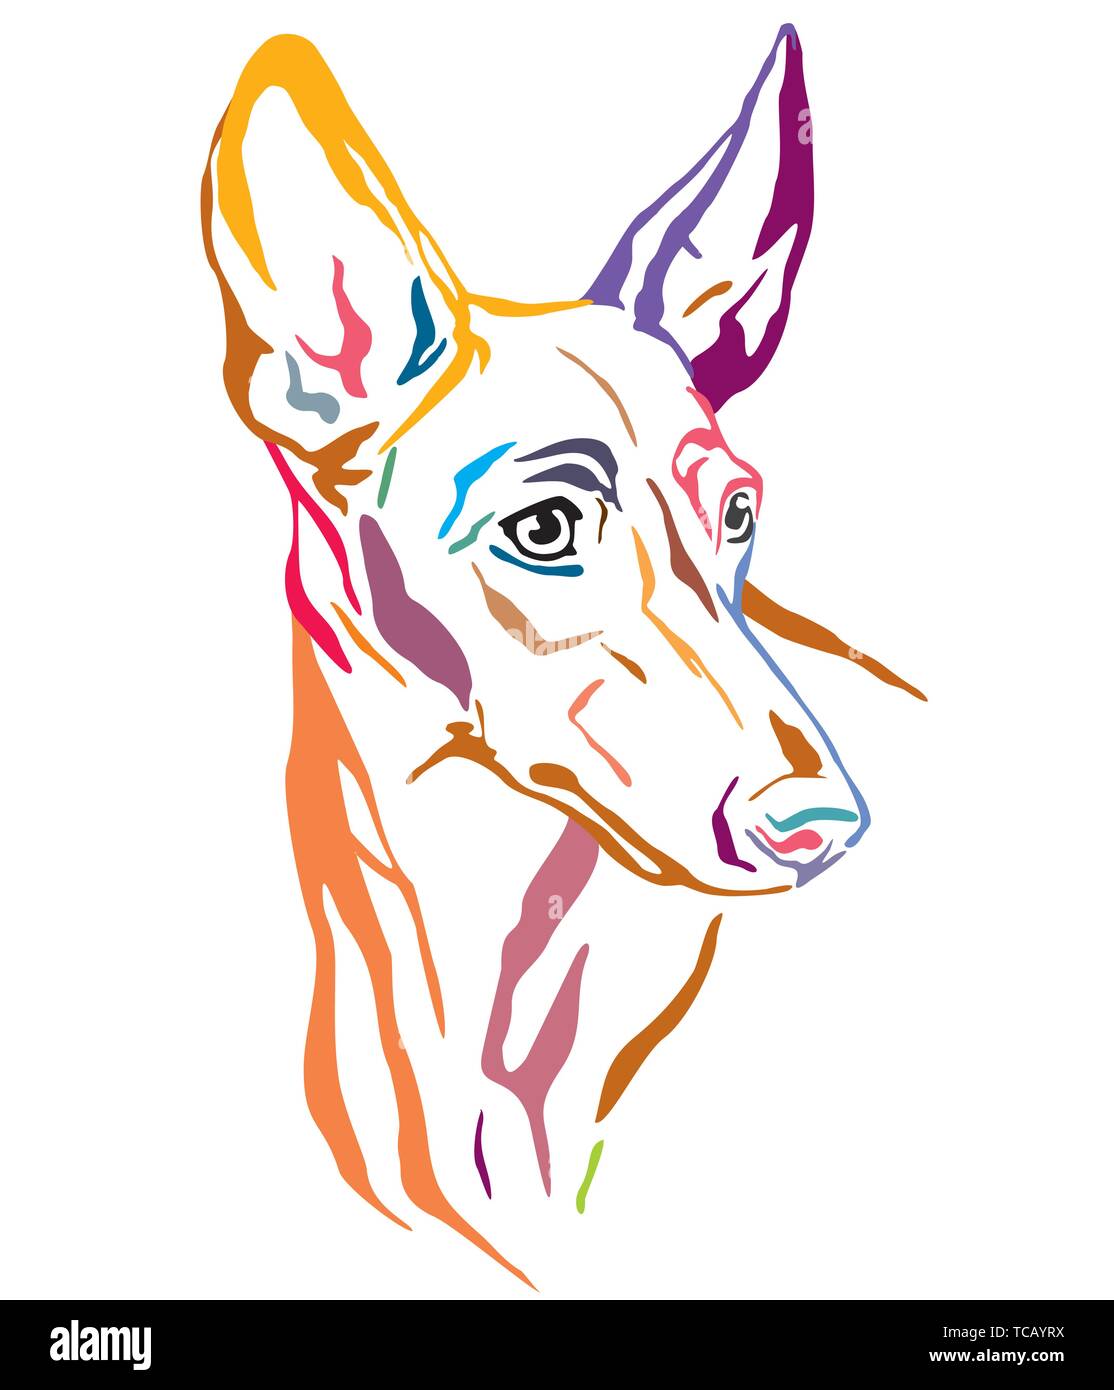 Bunt dekorativ Übersicht Porträt der Cirneco dell'Etna Hunde im Profil suchen, Vector Illustration in verschiedenen Farben auf weißem Hintergrund Stock Vektor